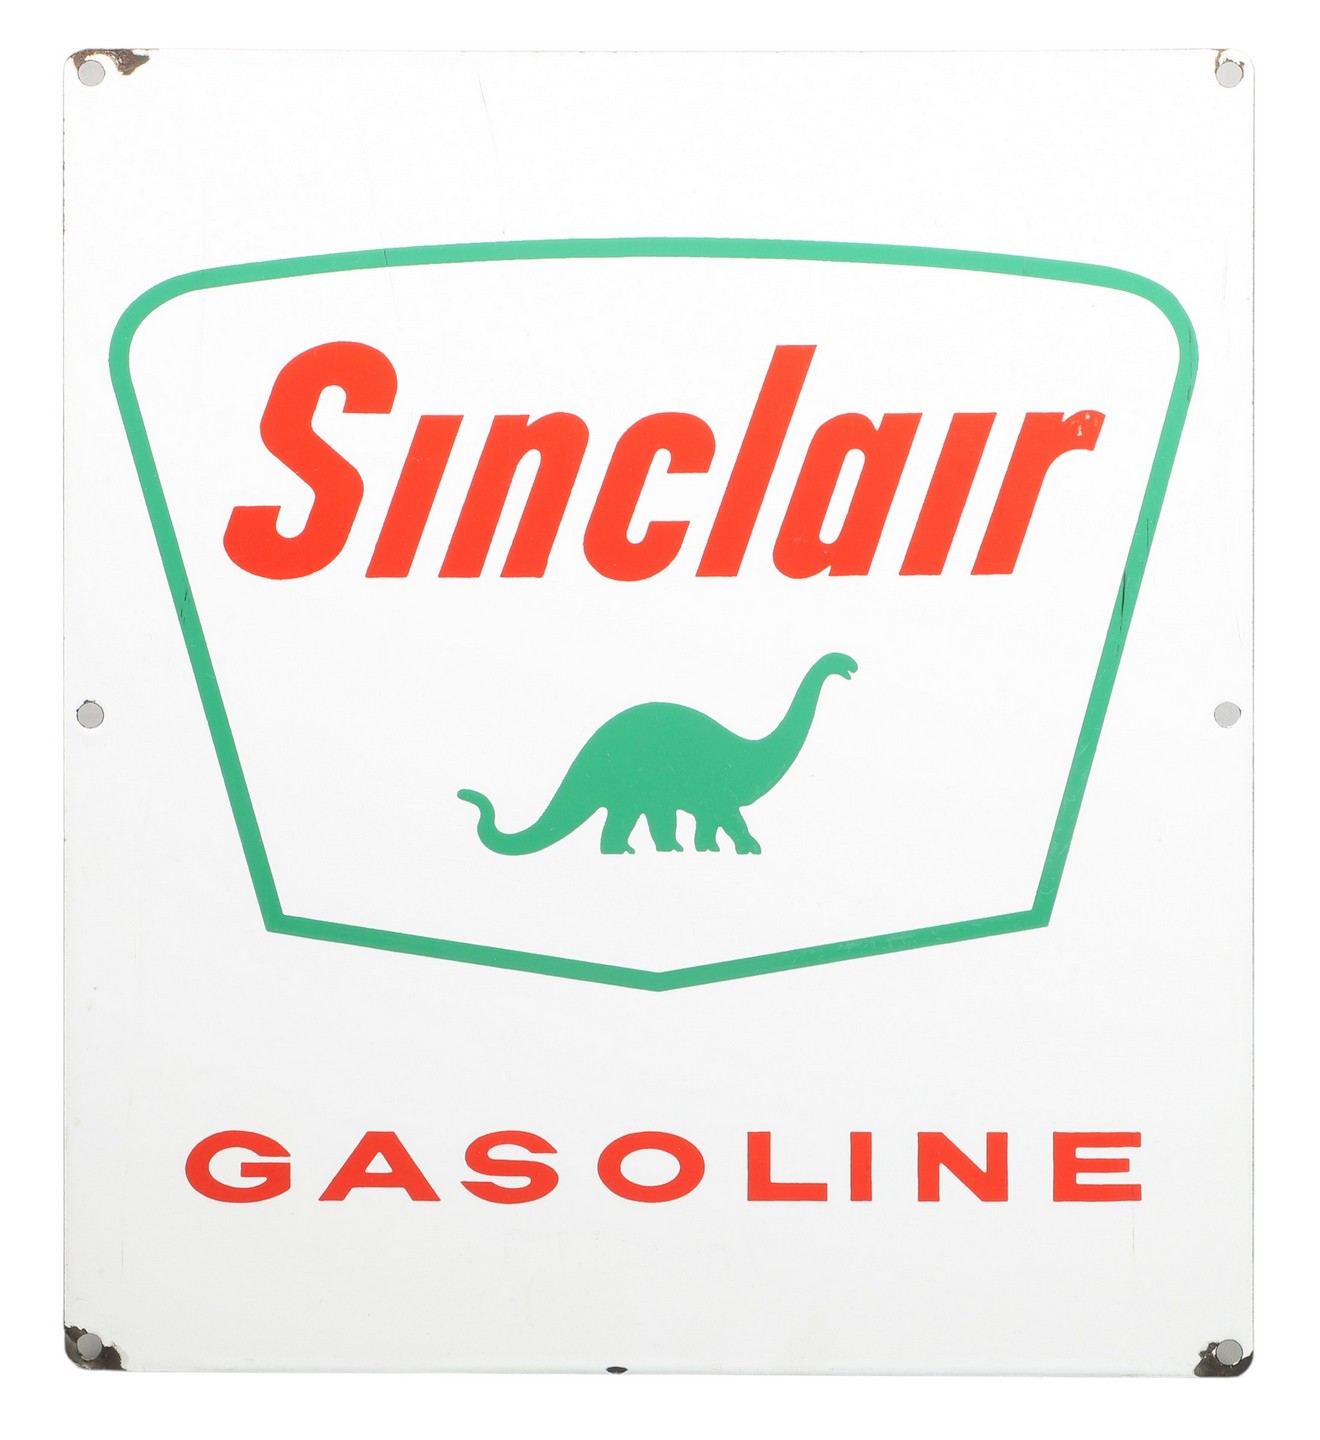 Sinclair Gasoline enameled steel